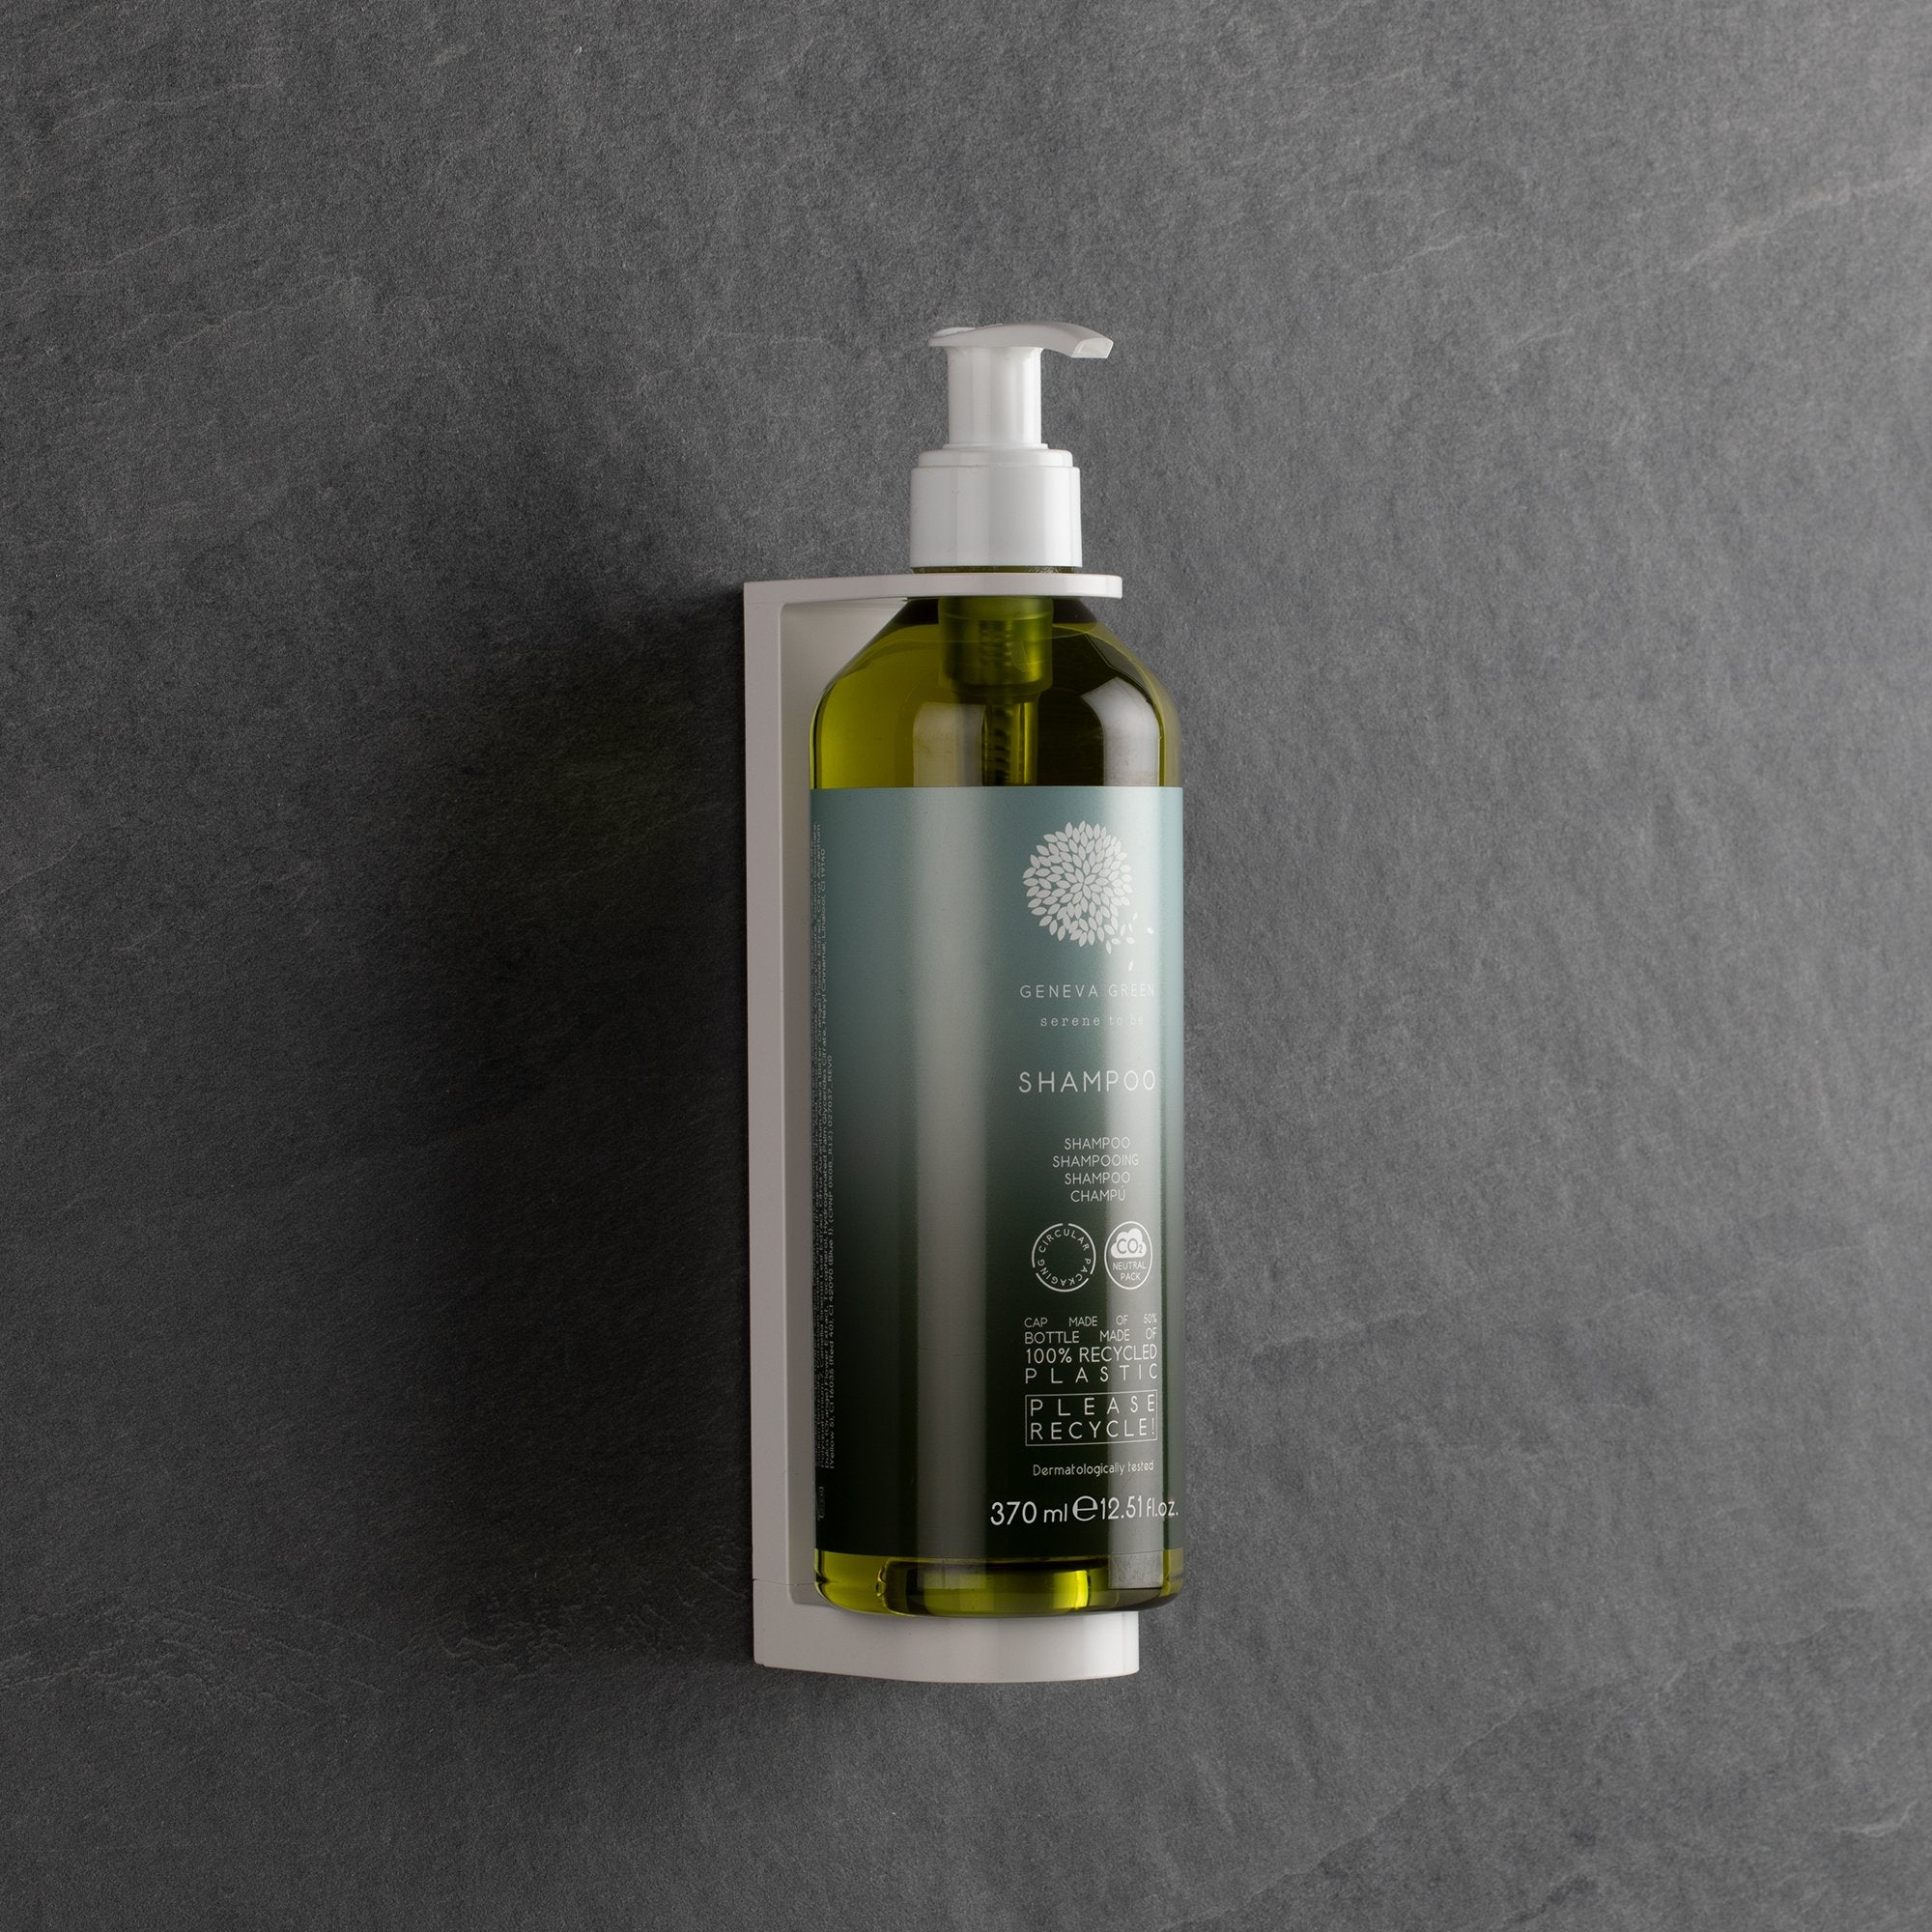 Geneva Green Shampoo With Locked Pump (370 ml) 